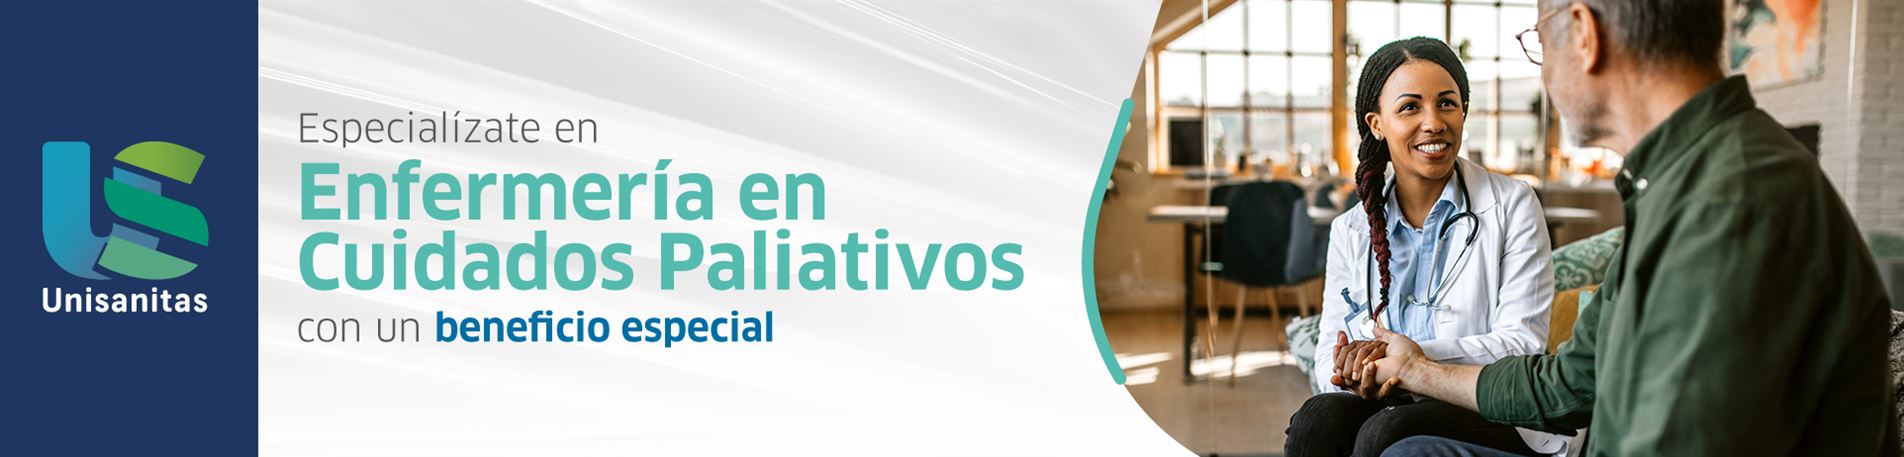 Fund-Universitaria-Sanitas-15Dto-EspecializacionEnfermeria